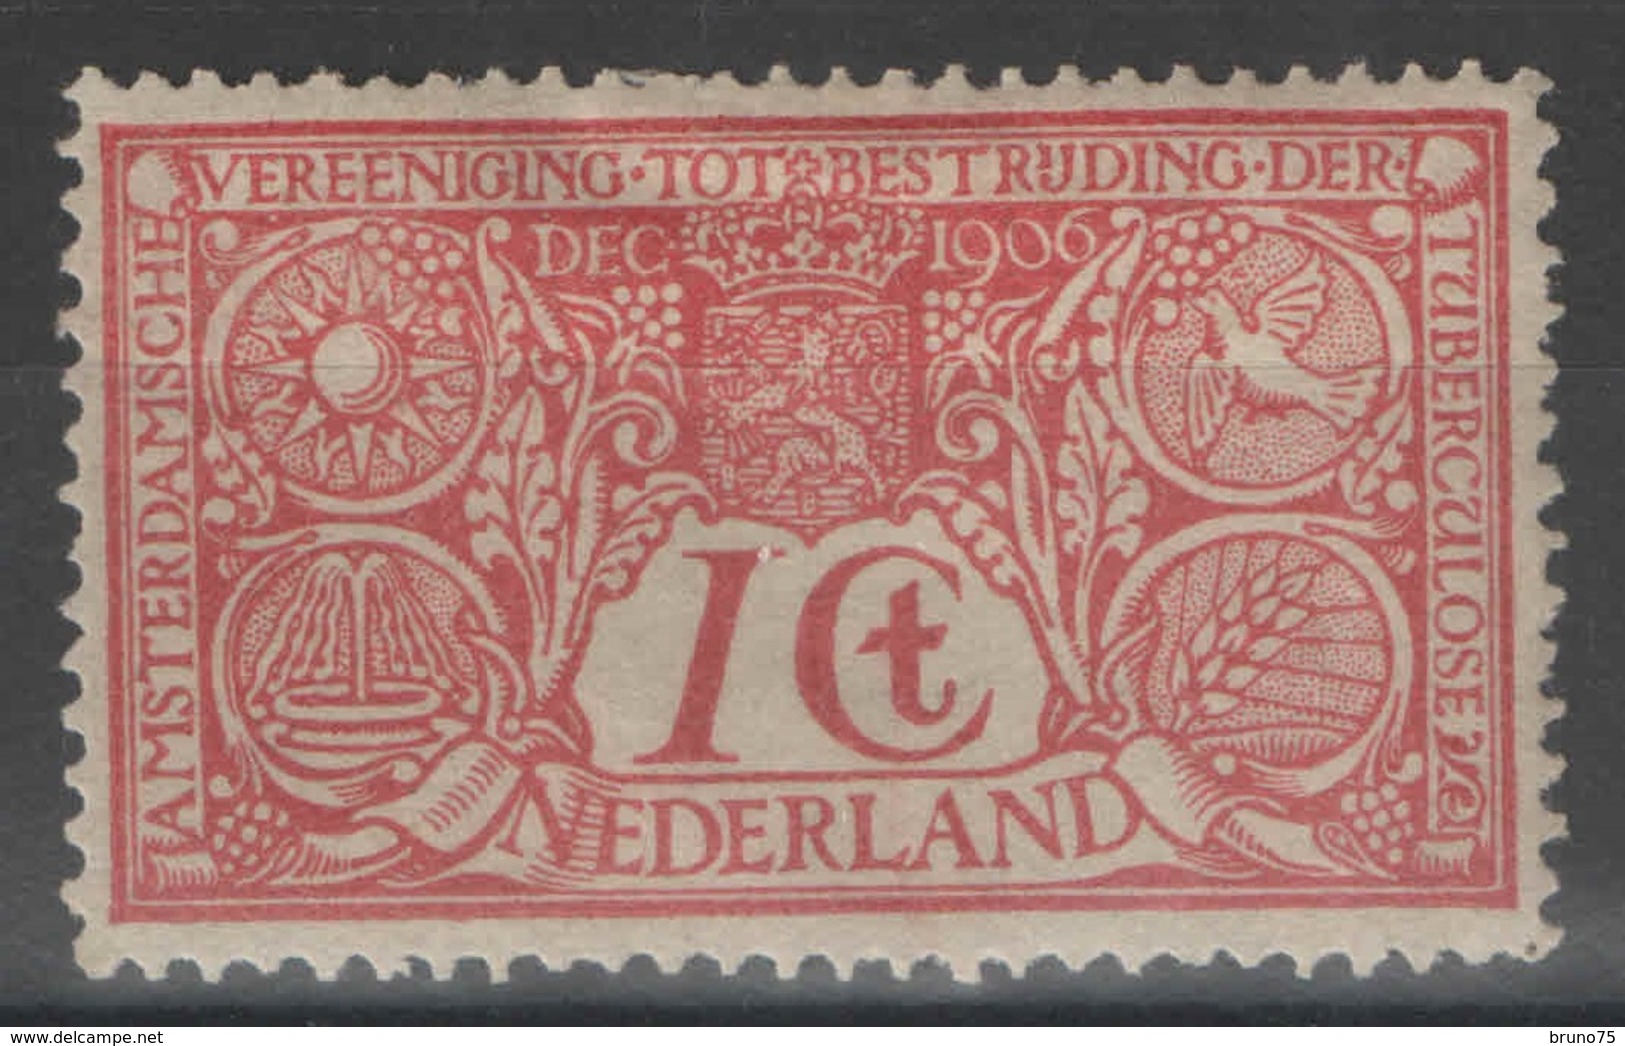 Pays-Bas - YT 70 * - 1906 - Ongebruikt